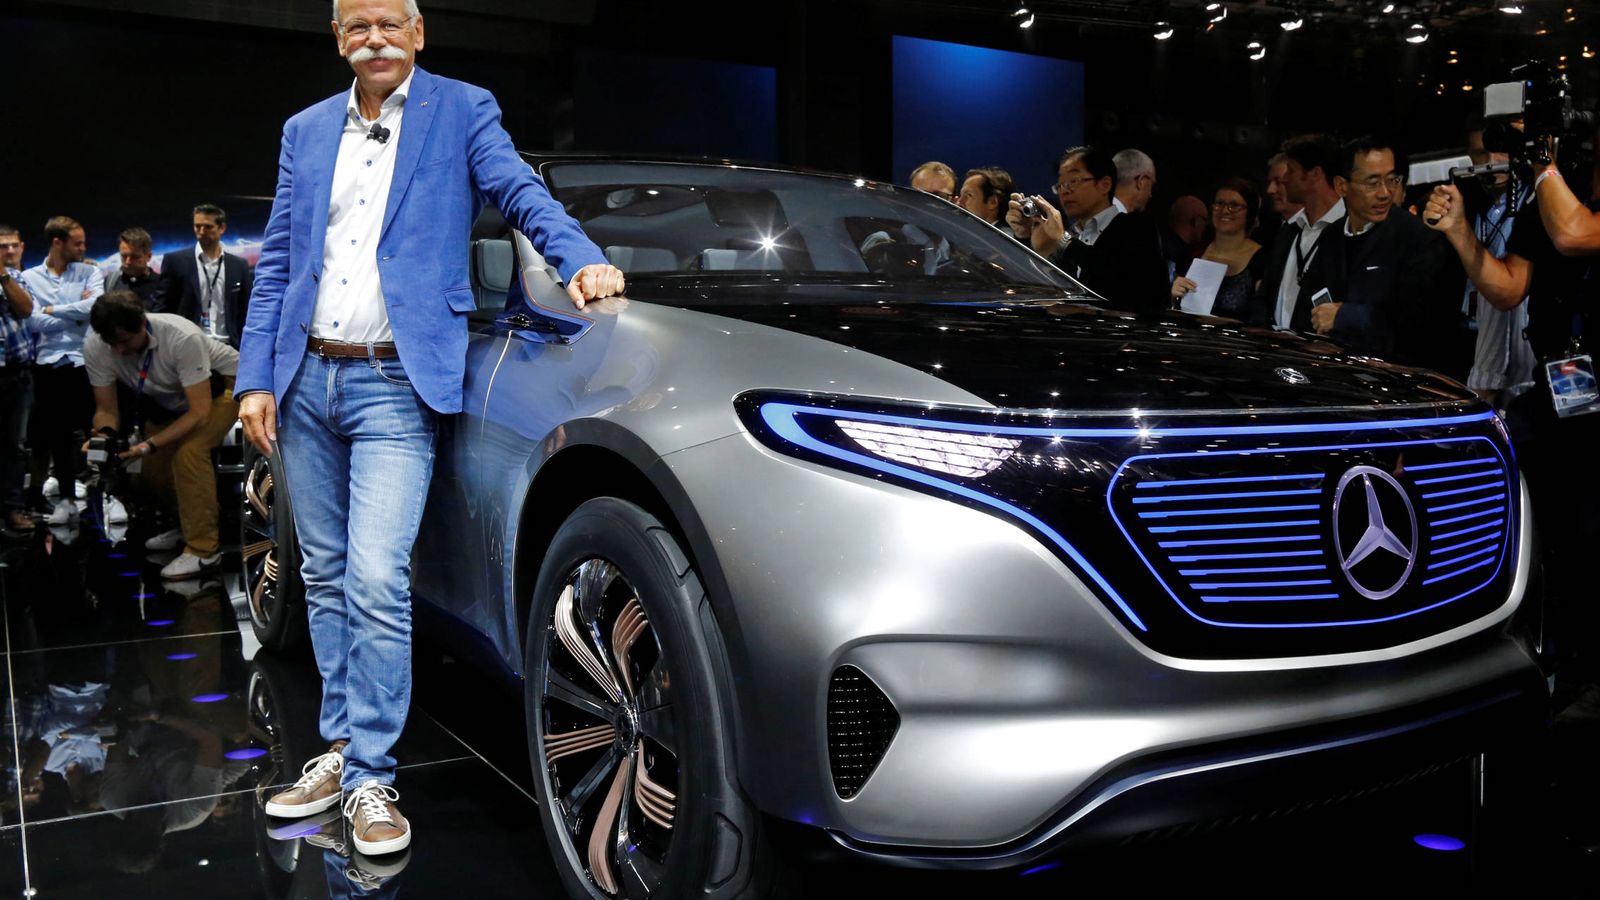 Foto: Dieter Zetsche, CEO de Mercedes-Benz, posa frente al Mercedes EQ. (Reuters)